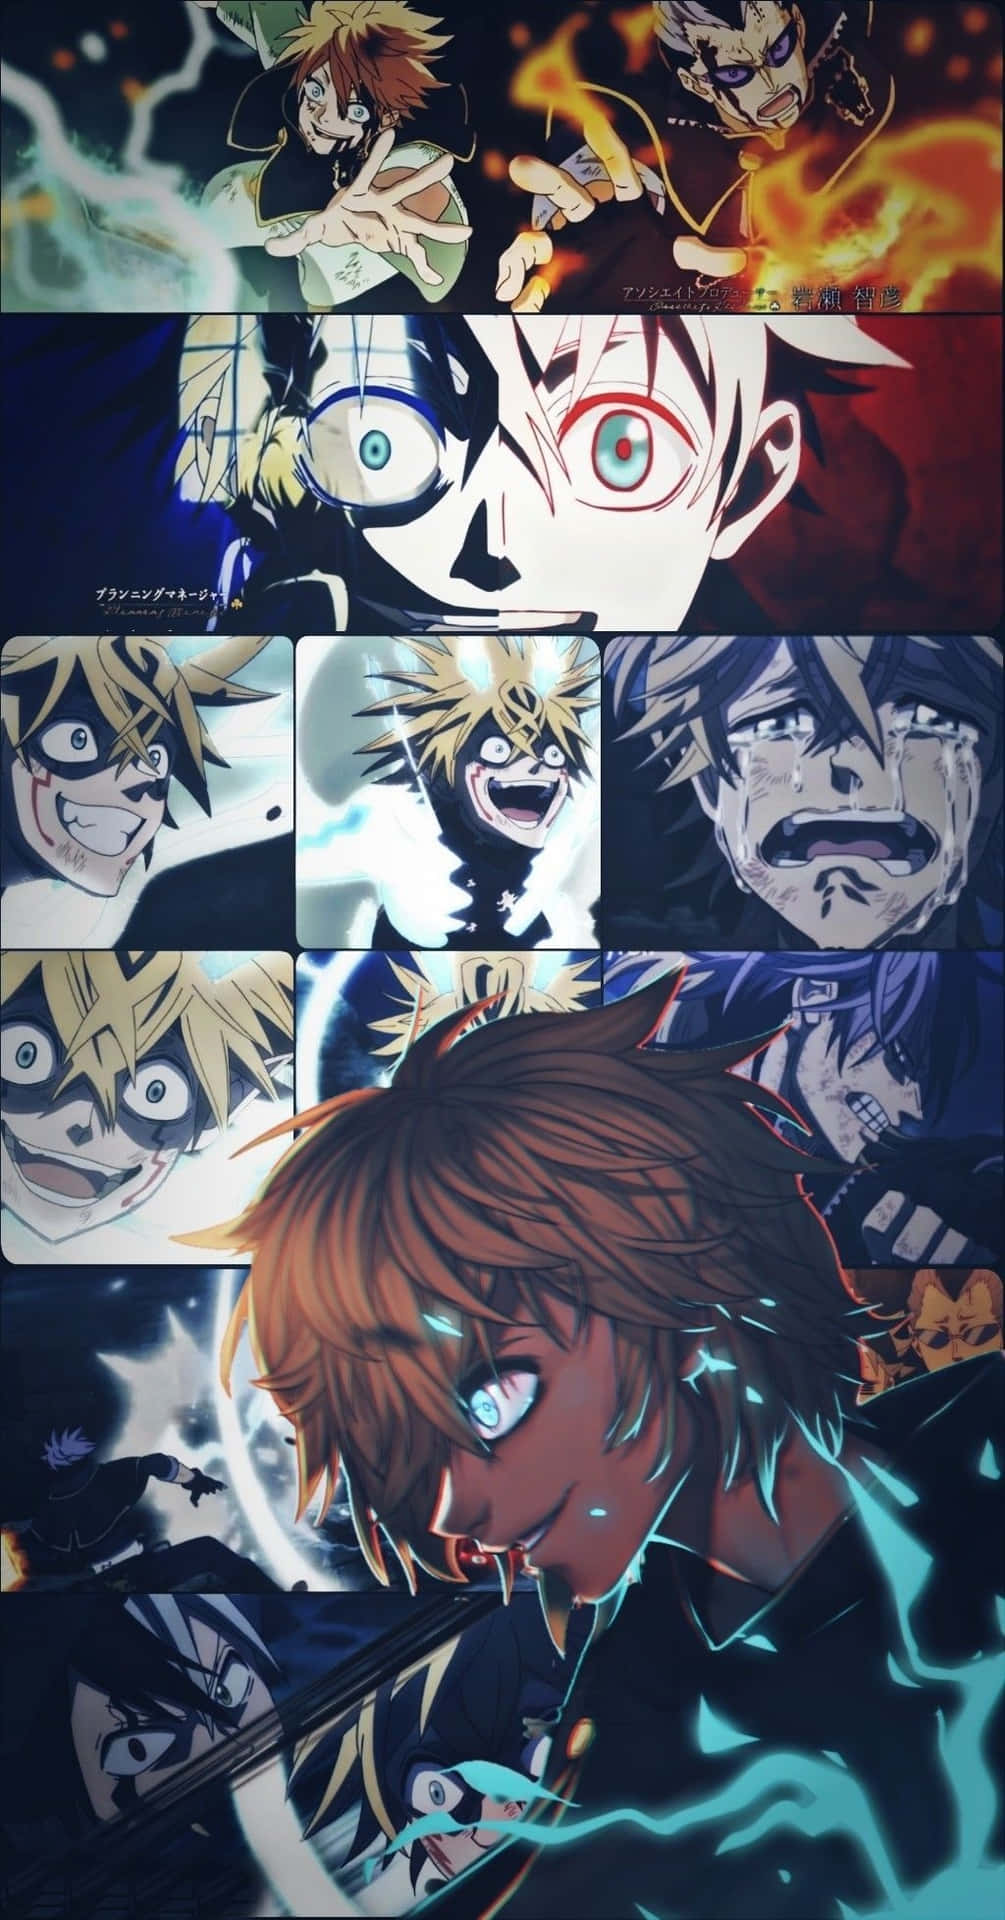 Einecollage Von Anime-charakteren Mit Unterschiedlichen Gesichtern